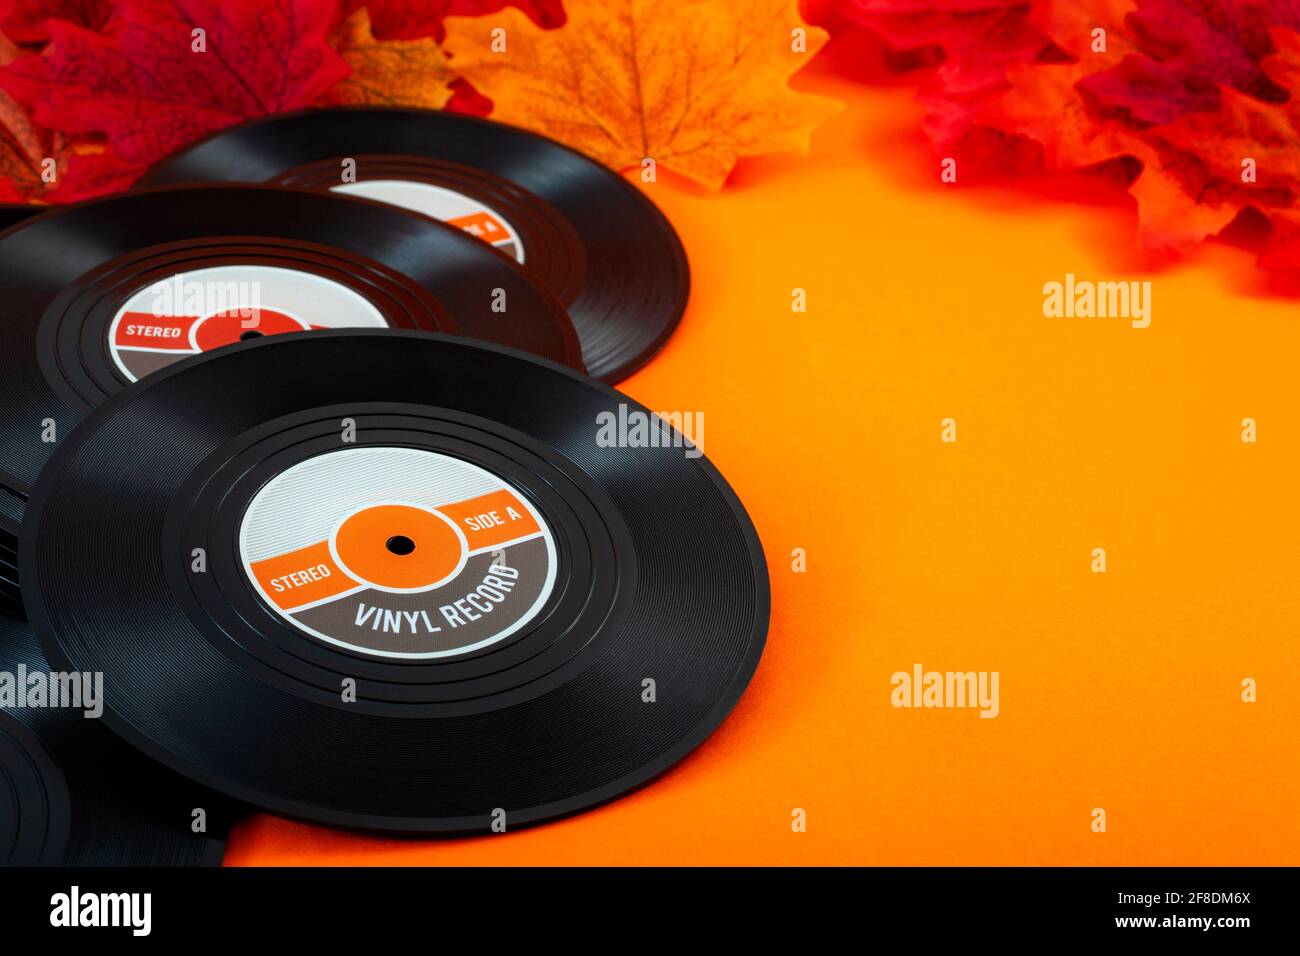 Chansons nostalgiques, musique d'automne et concept mélancolique avec des disques vinyles vintage entourés de feuilles rouges et jaunes d'automne sur fond orange avec cop Banque D'Images